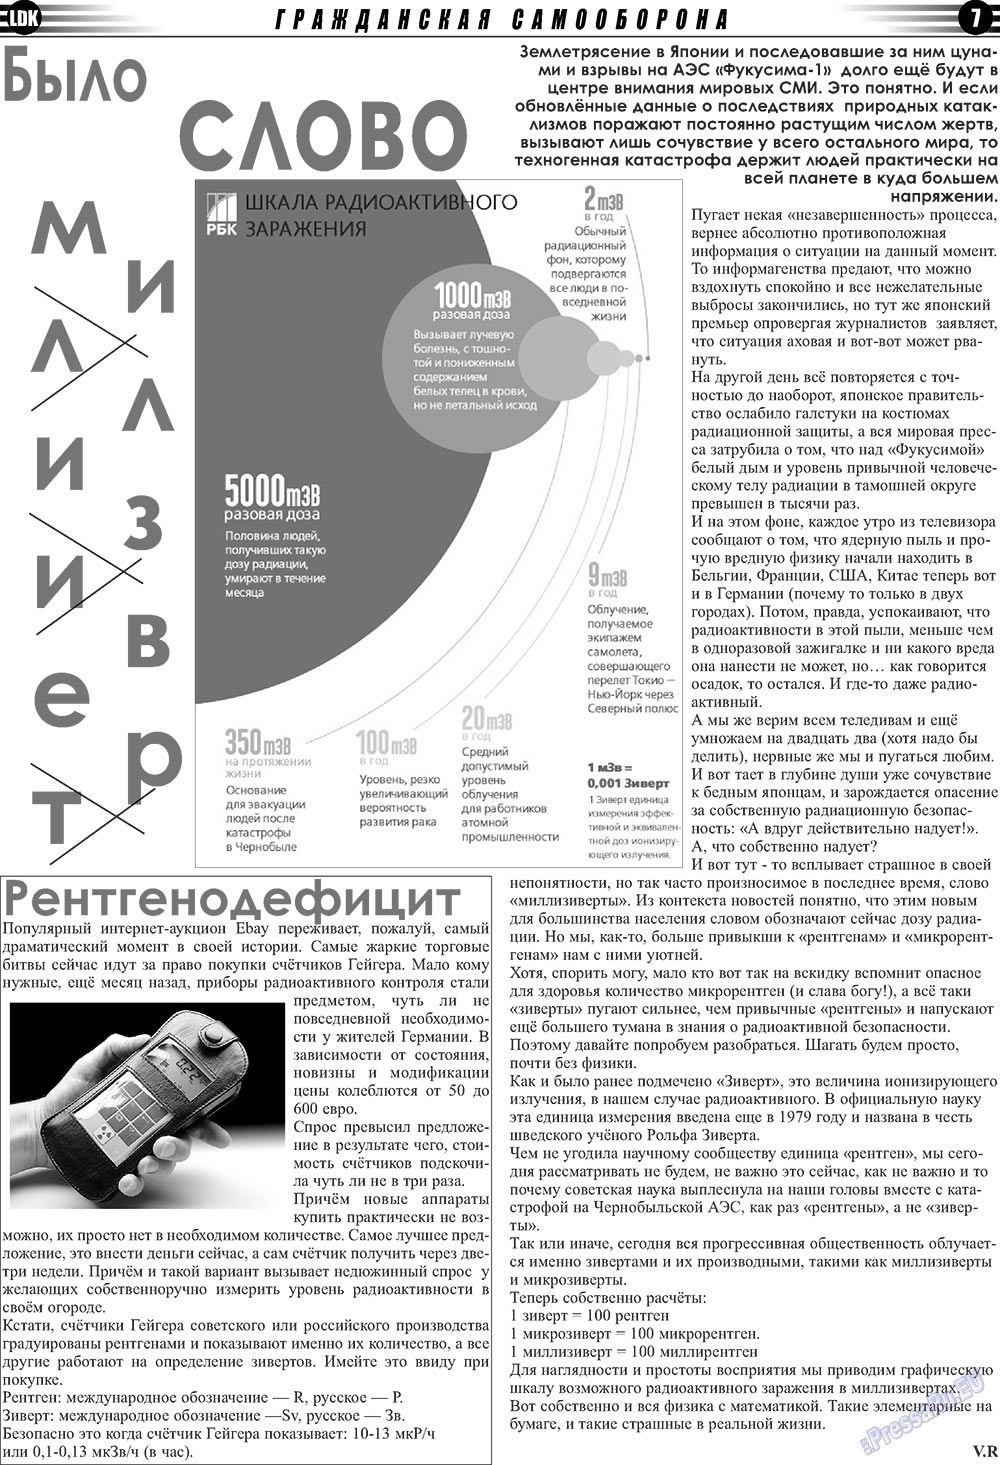 LDK по-русски (газета). 2011 год, номер 2, стр. 7